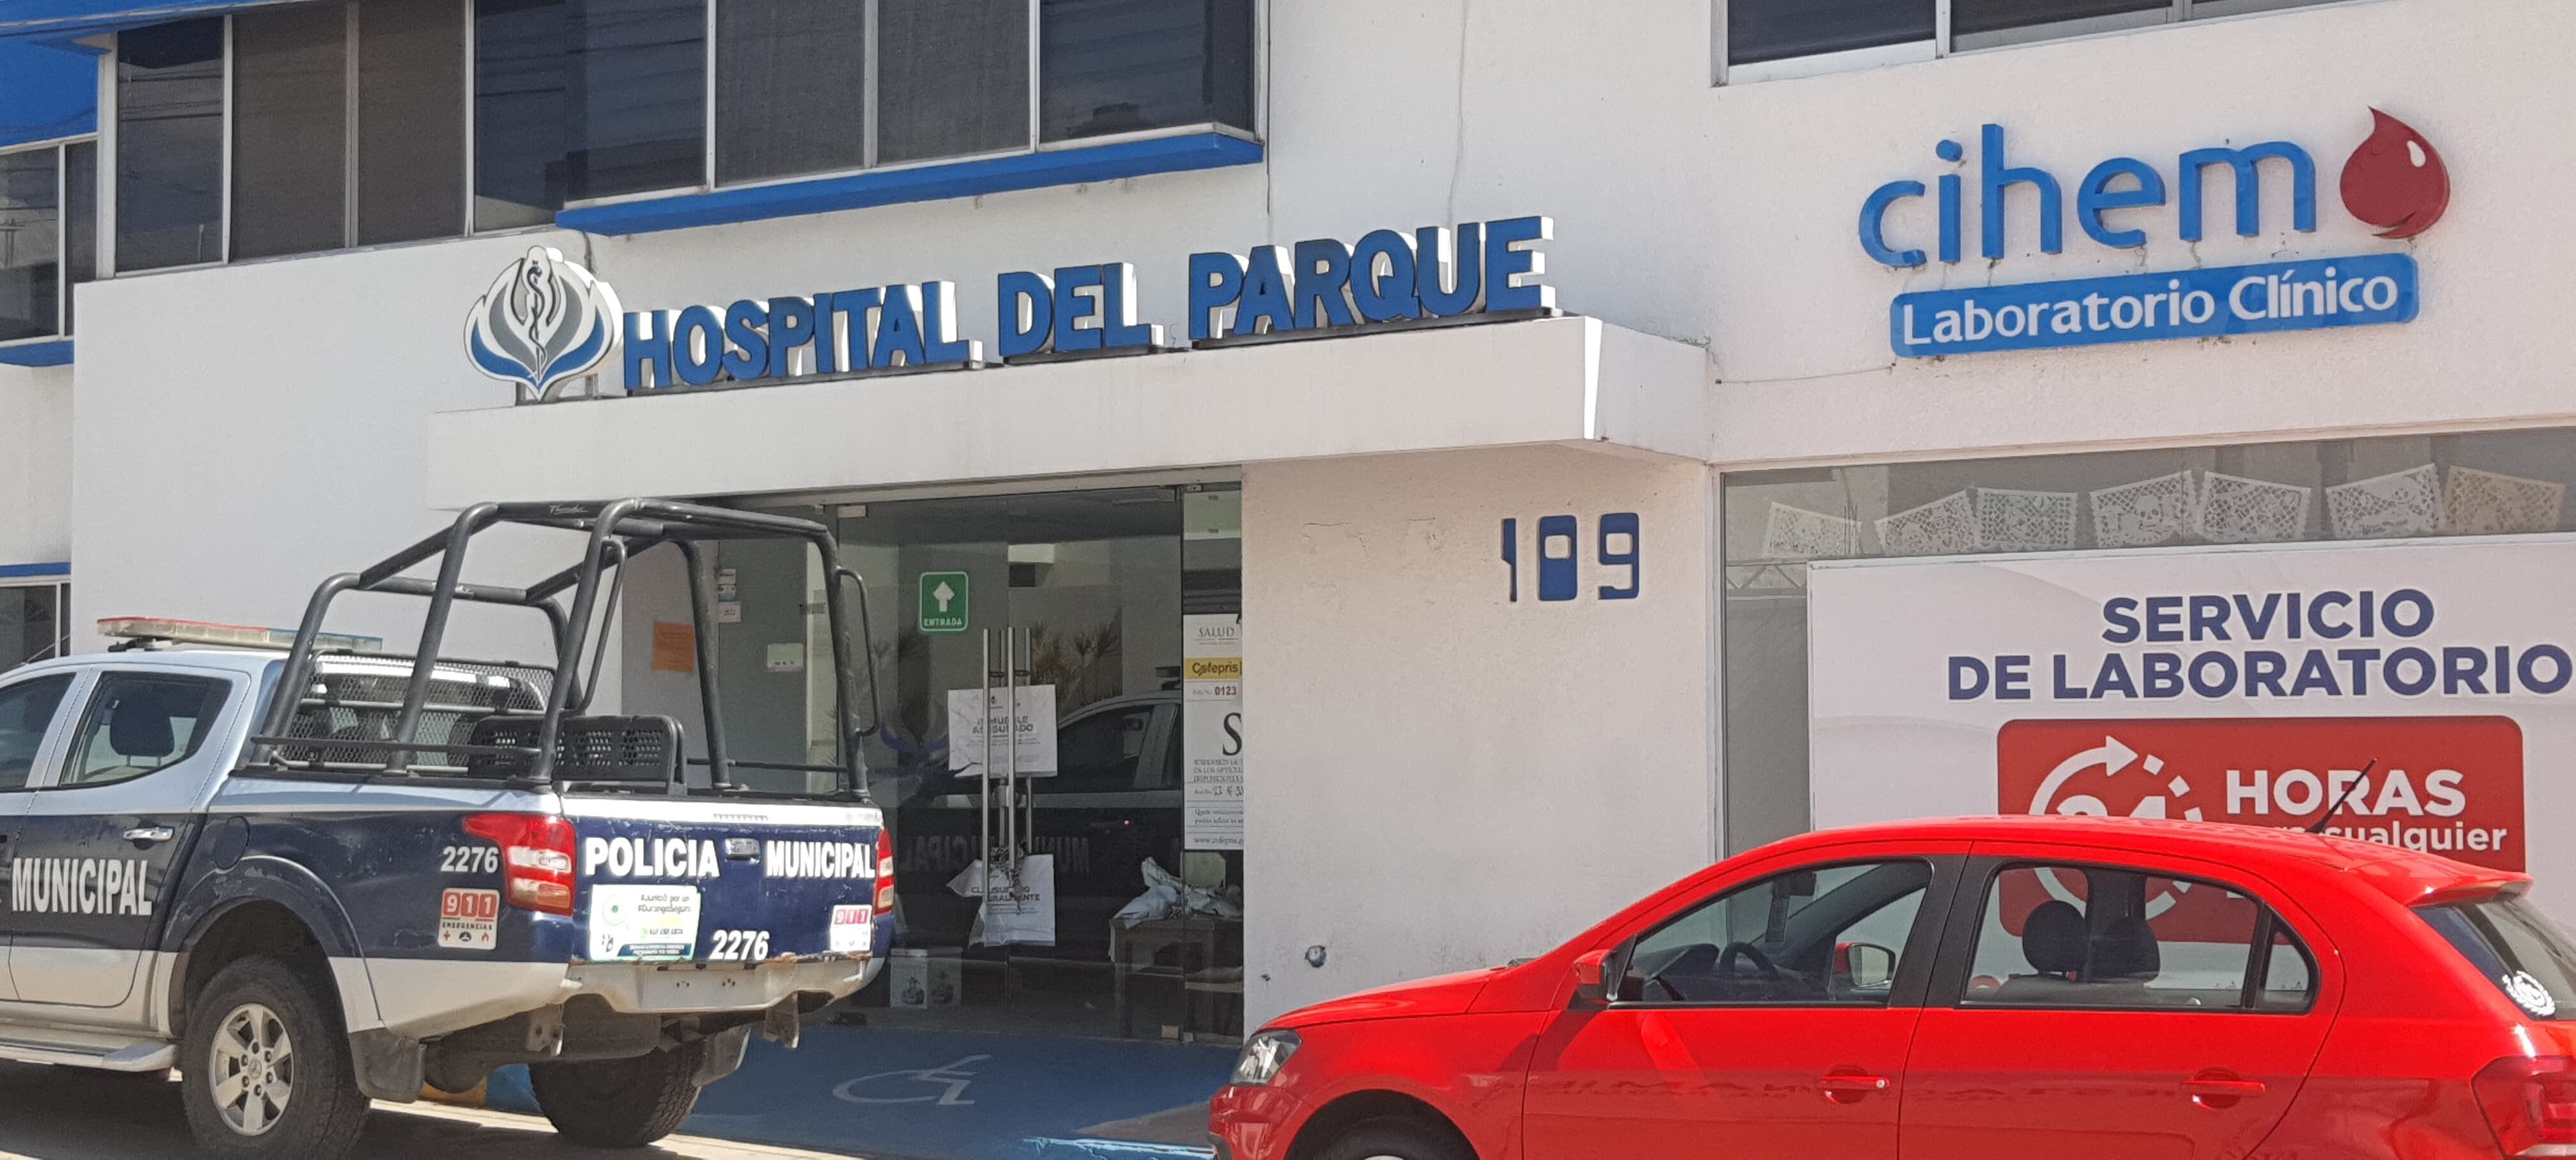 Meningitis en Durango: Hospital de la ‘zona cero’ pagará 40 millones de pesos por indemnización